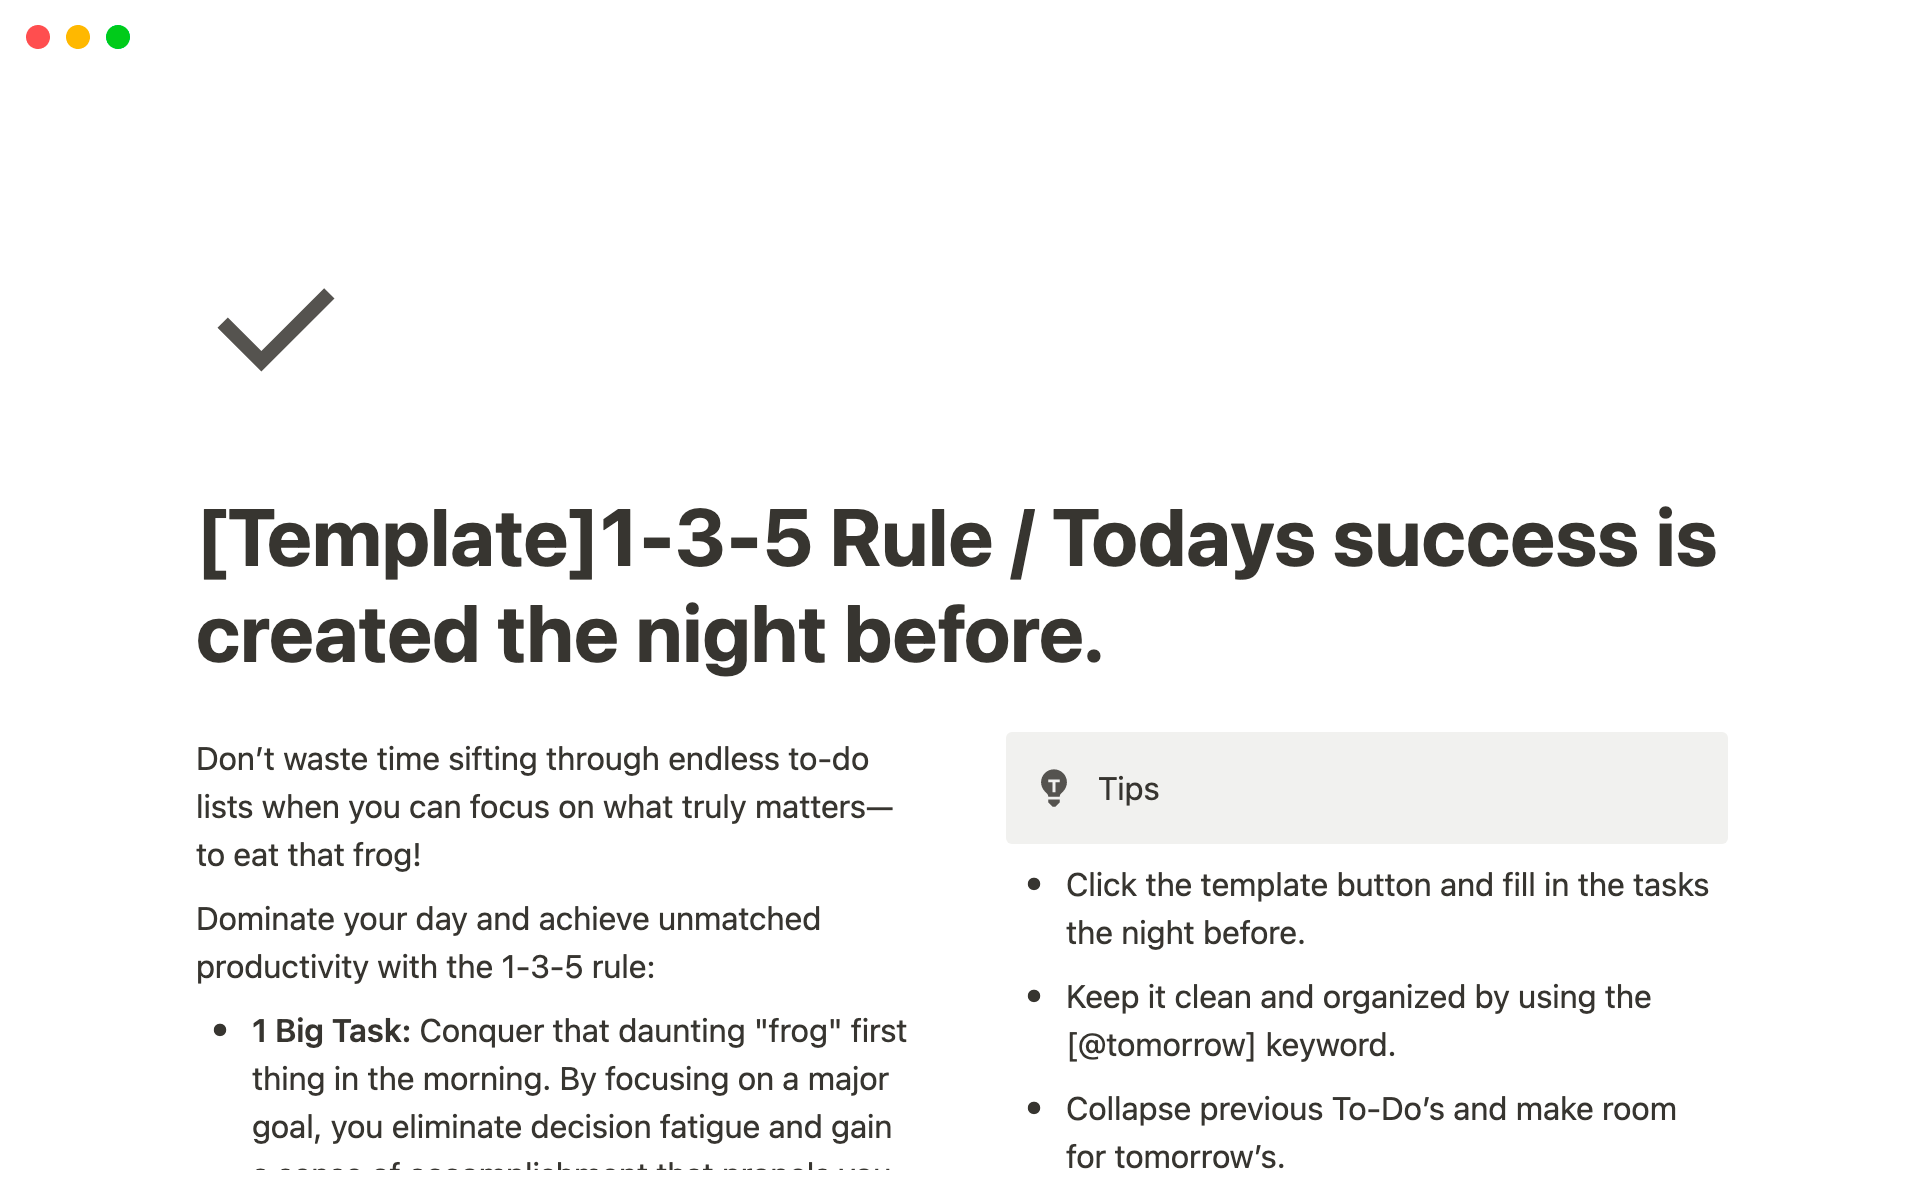 Uma prévia do modelo para 1-3-5 Rule / Today's success is created the night before